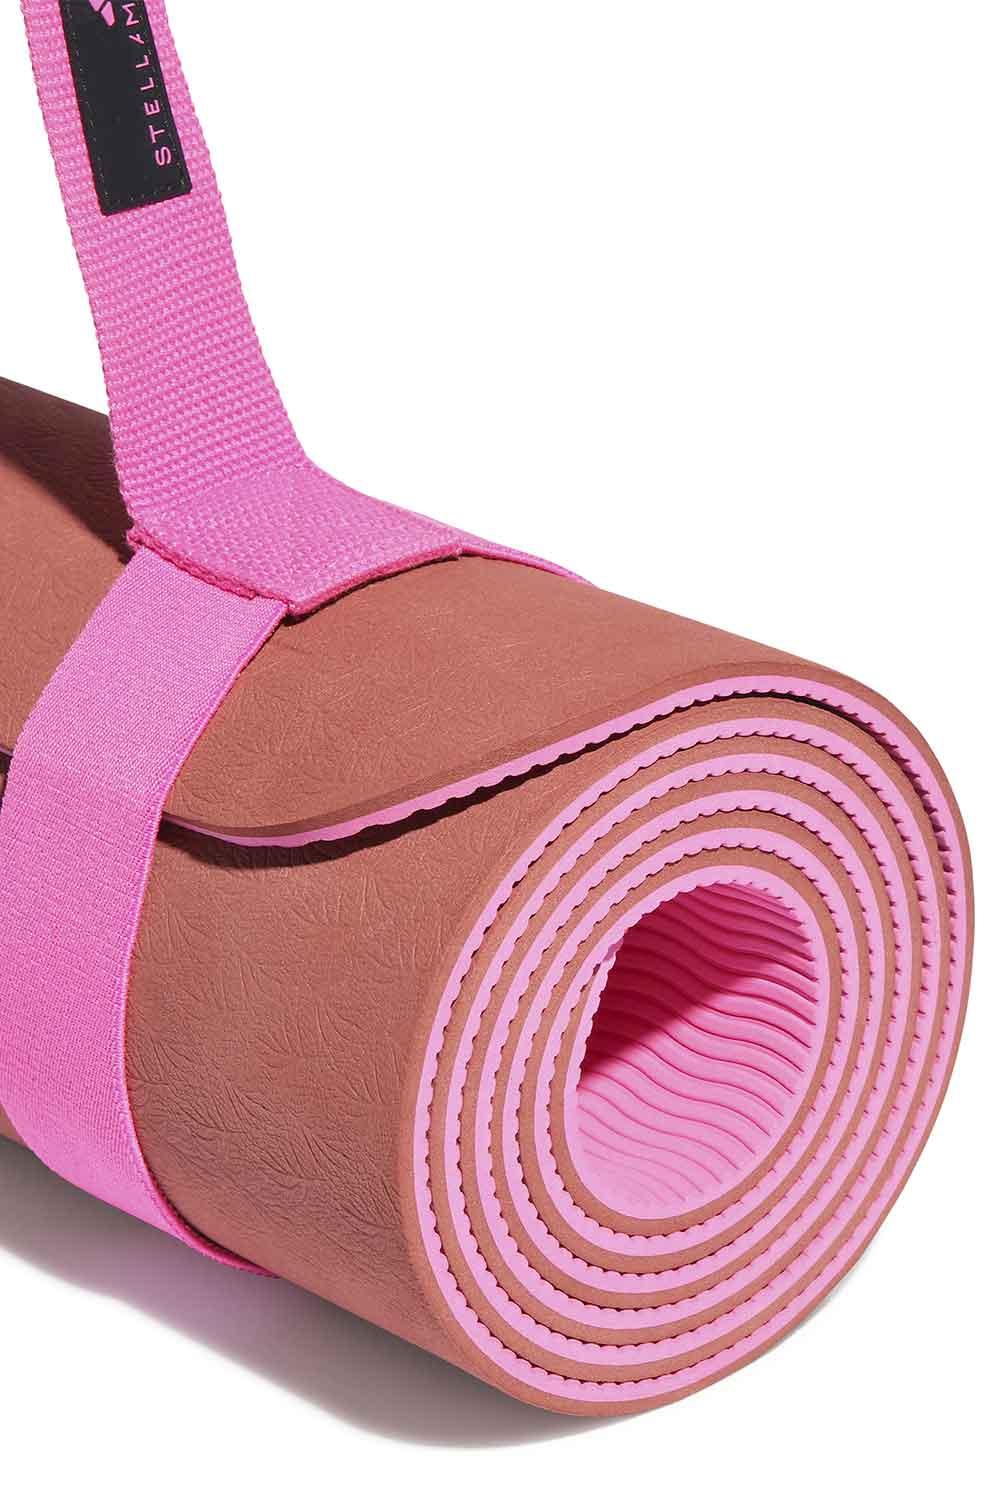 Adidas Yoga, Adidas By Stella Mccartney Yoga Mat